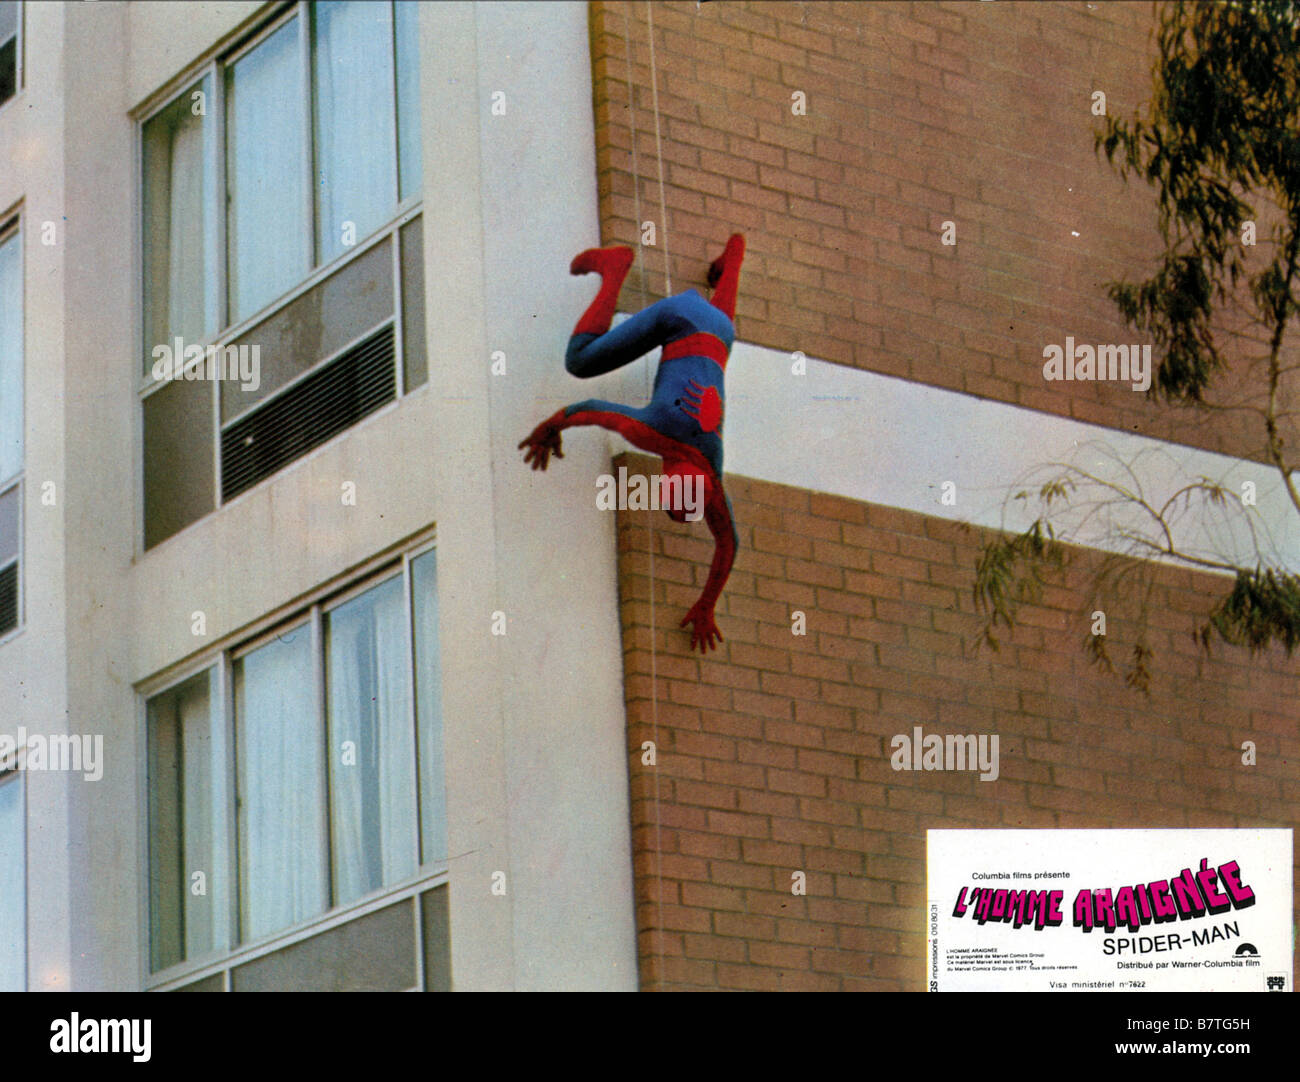 Spider-Man The Amazing Spider-Man / Spiderman / uomo ragno Anno: 1977 USA Nicholas Hammond Direttore: E.W. Swackhamer Foto Stock